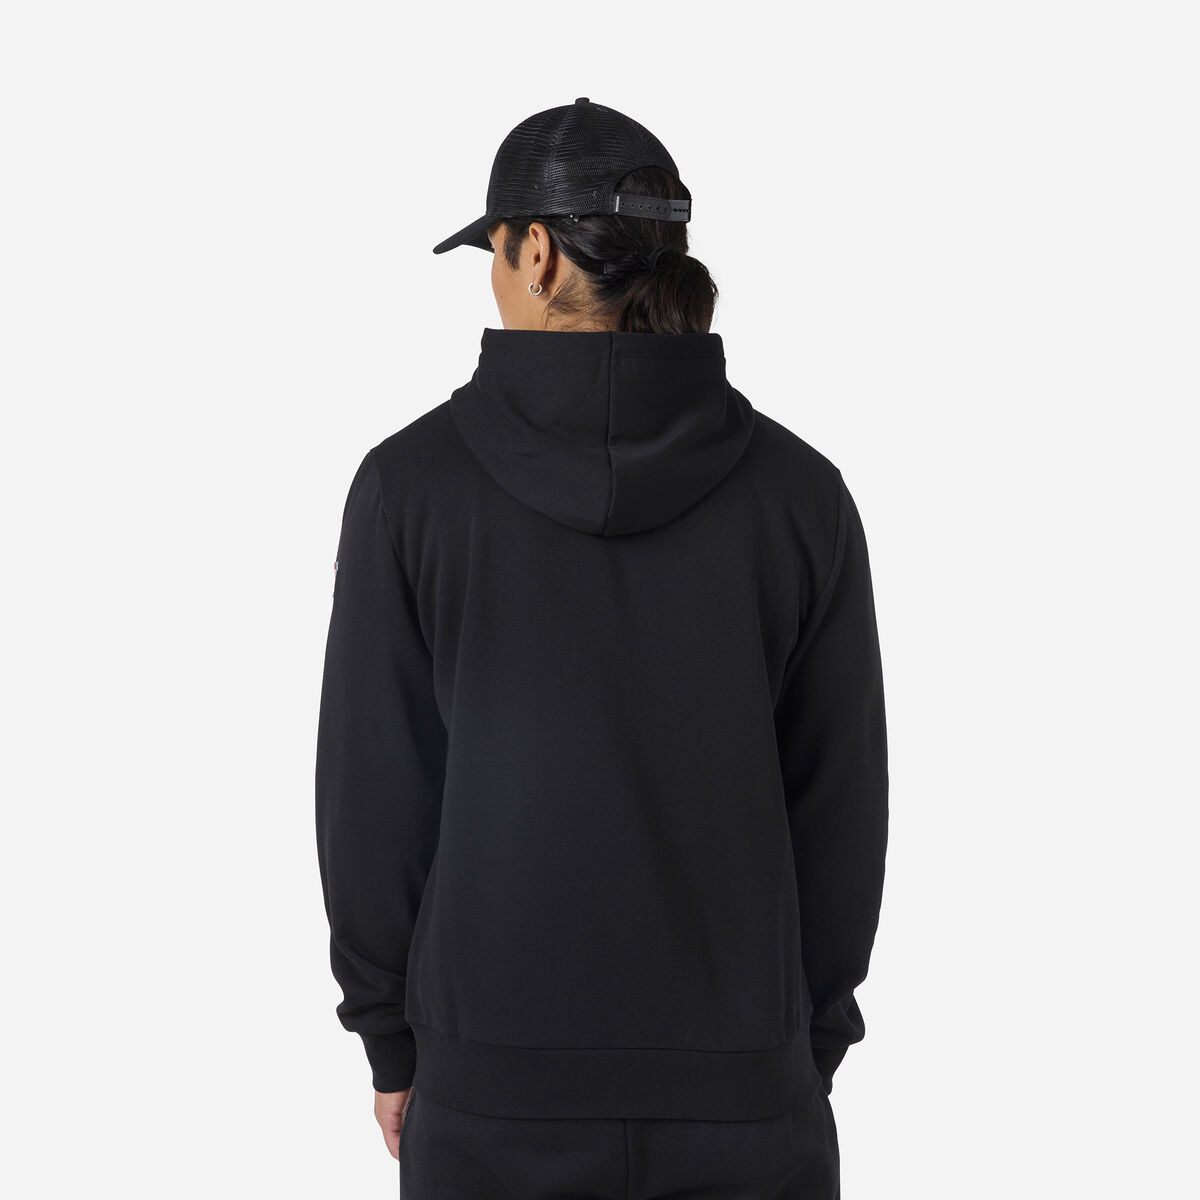 Rossignol Herrensweatshirt aus Baumwolle mit Kapuze, Logo und durchgehendem Reißverschluss Black